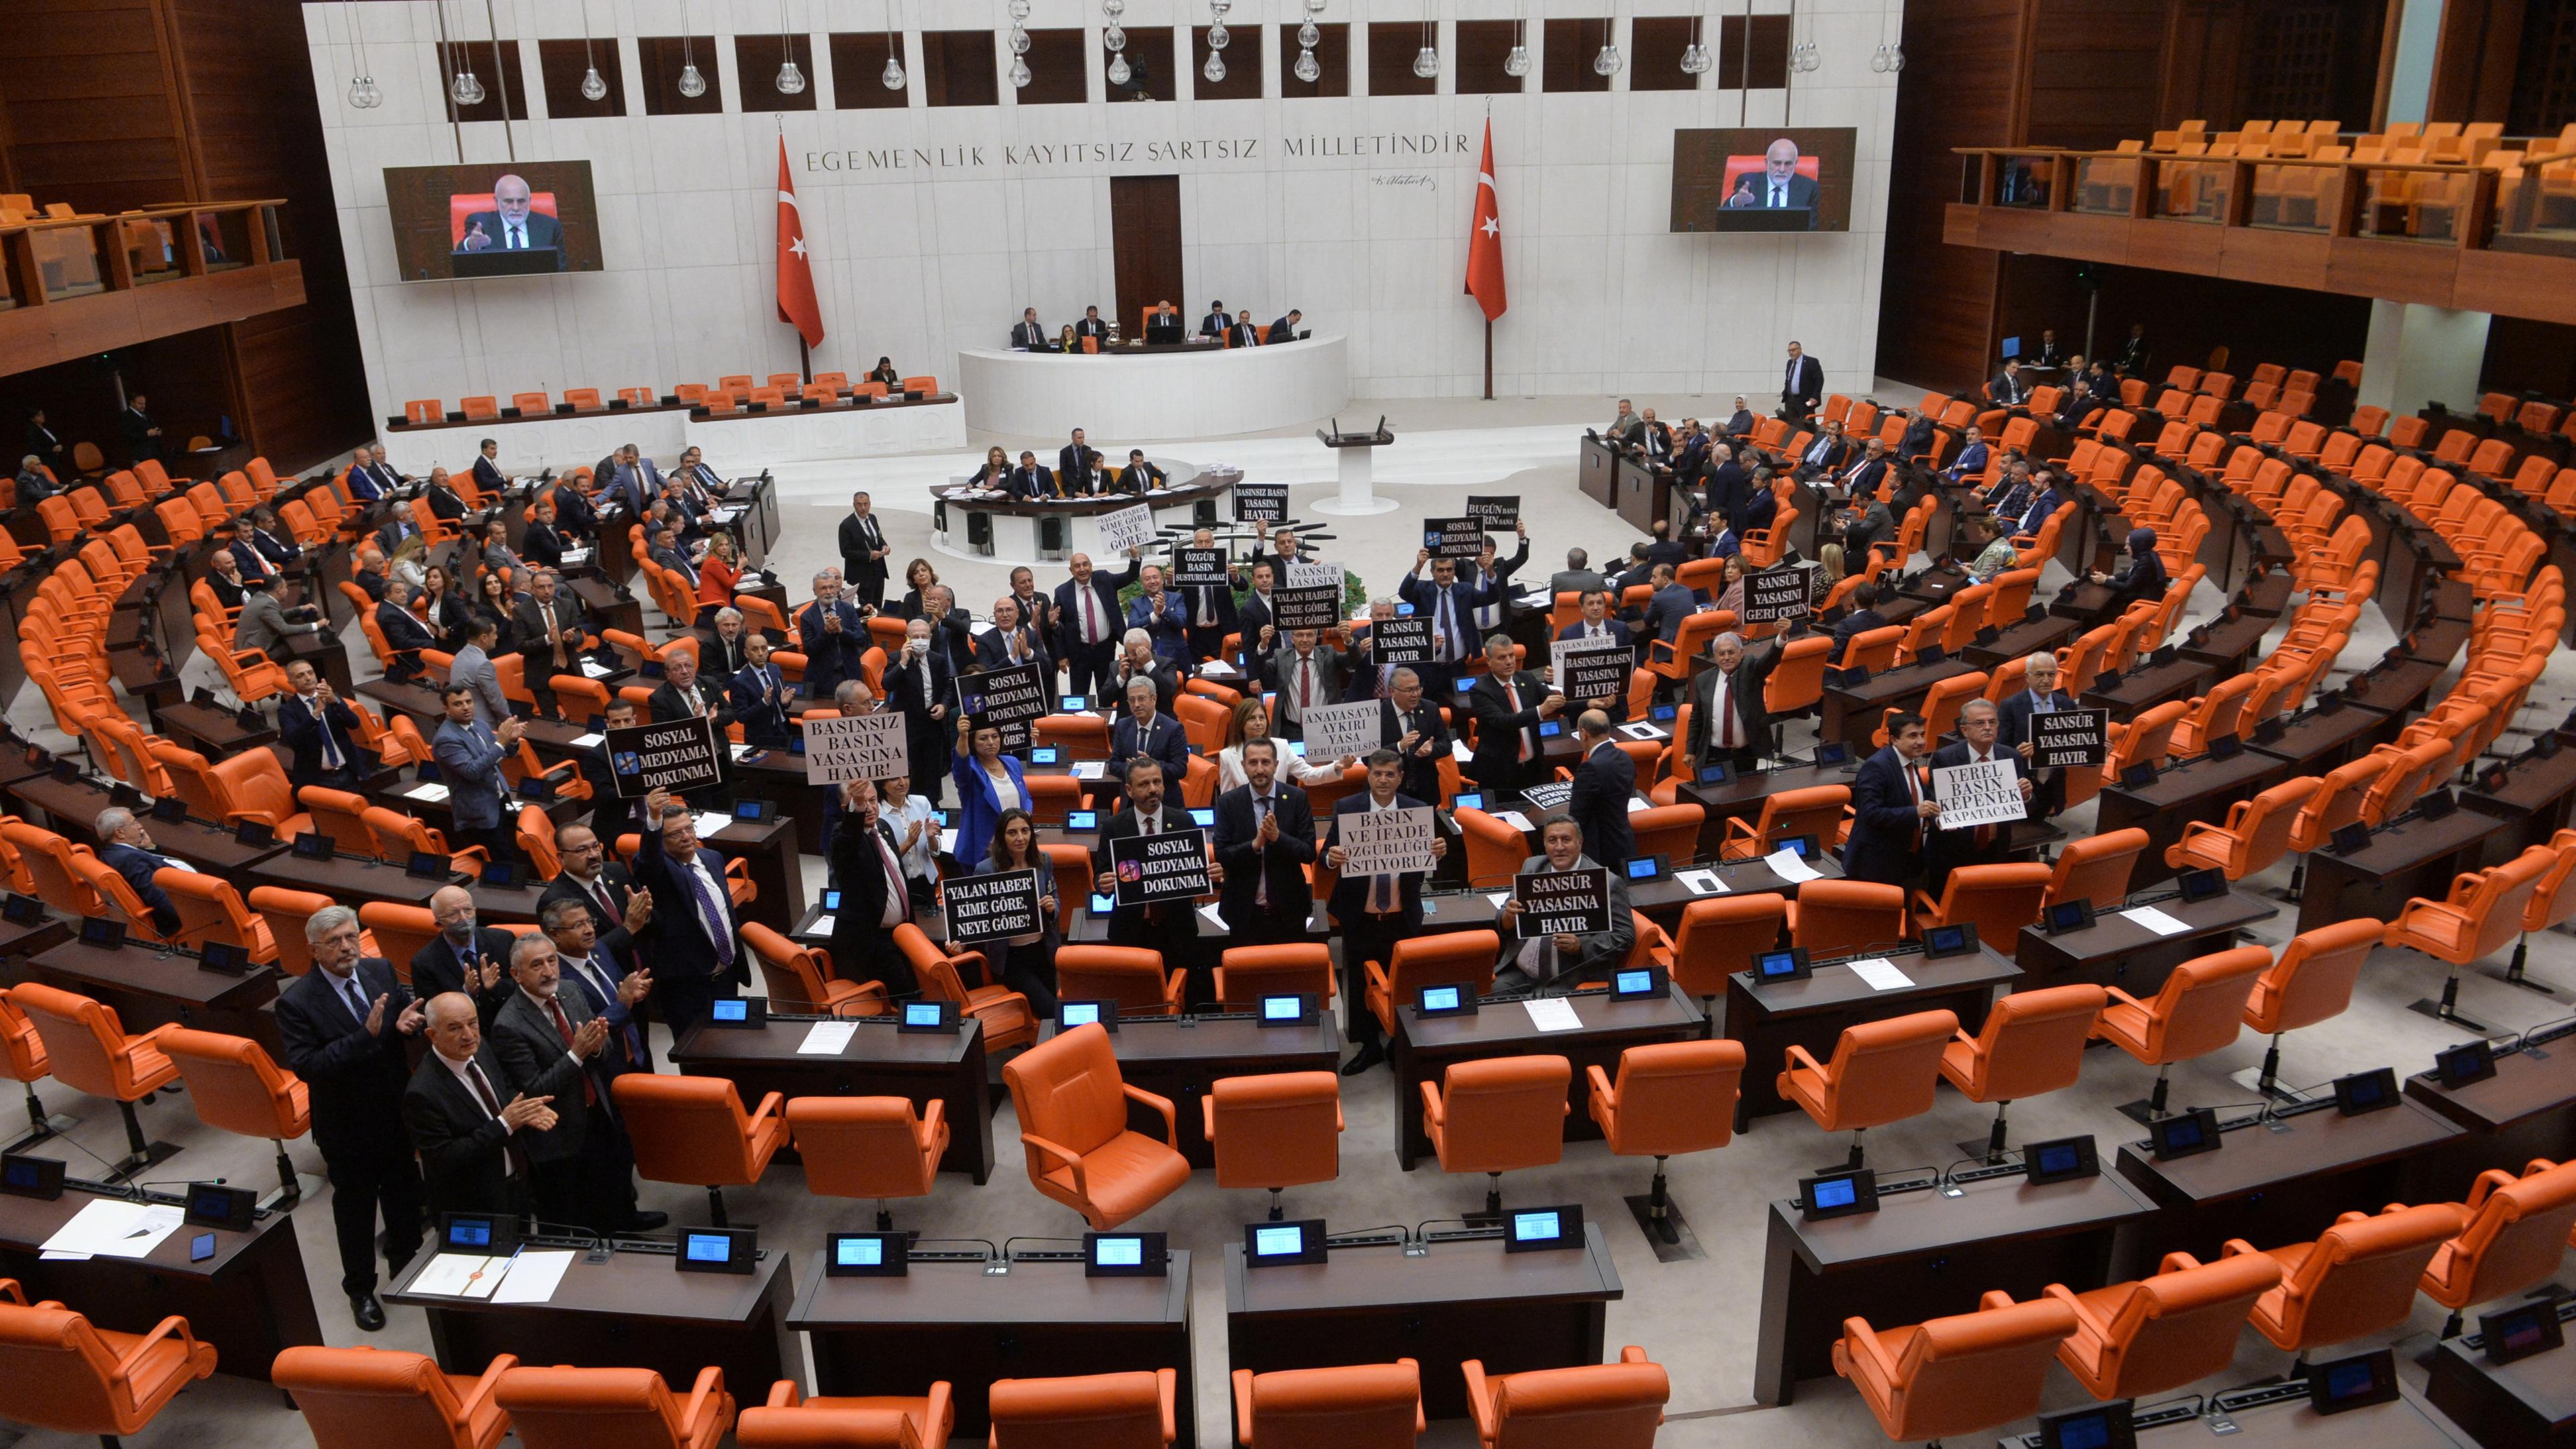 Die Opposition protestiert gegen das neue Mediengesetz im türkischen Parlament